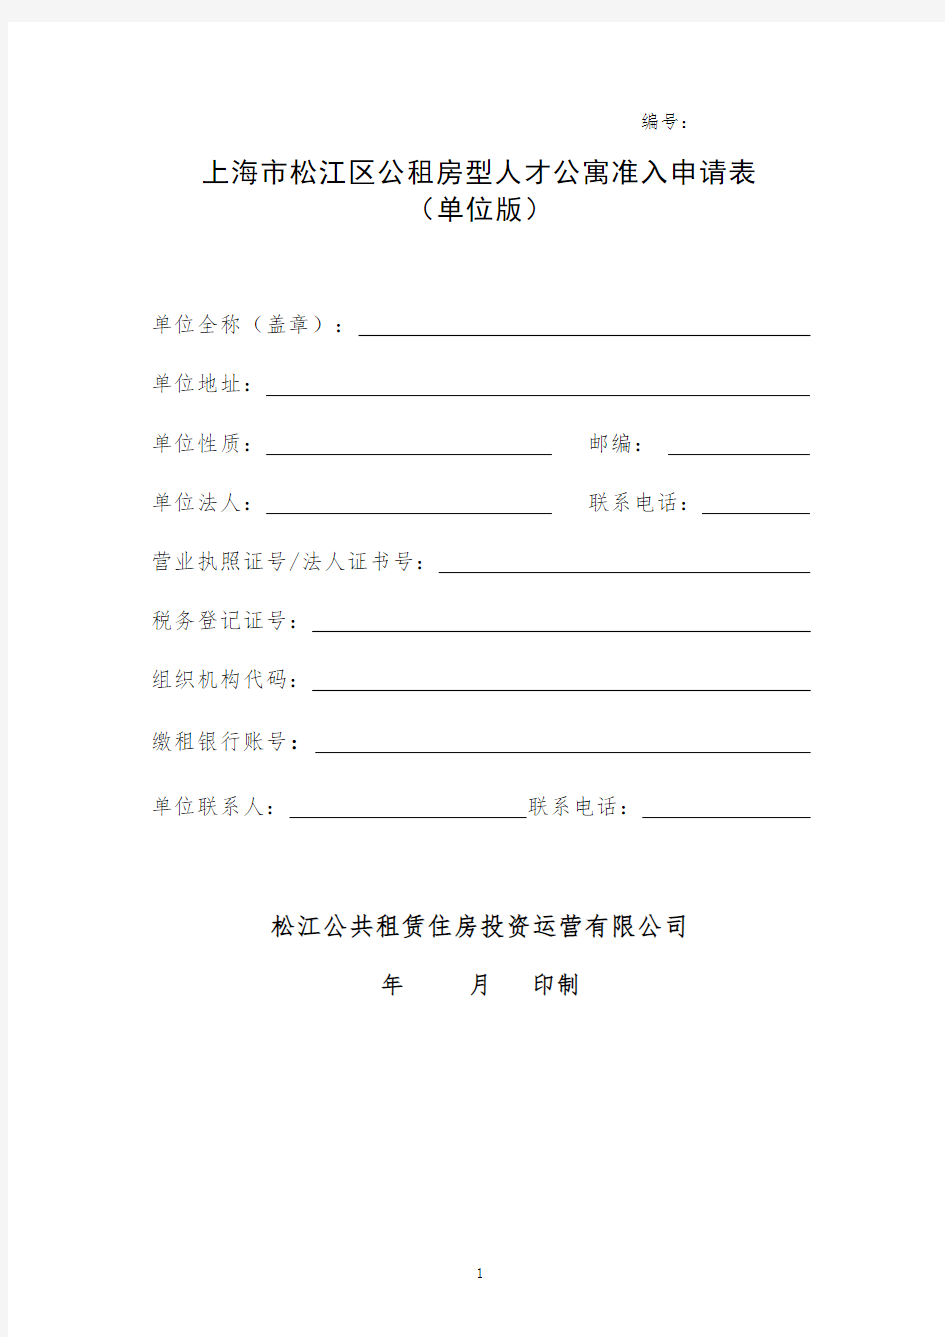 上海松江区公租房型人才公寓准入申请表单位版